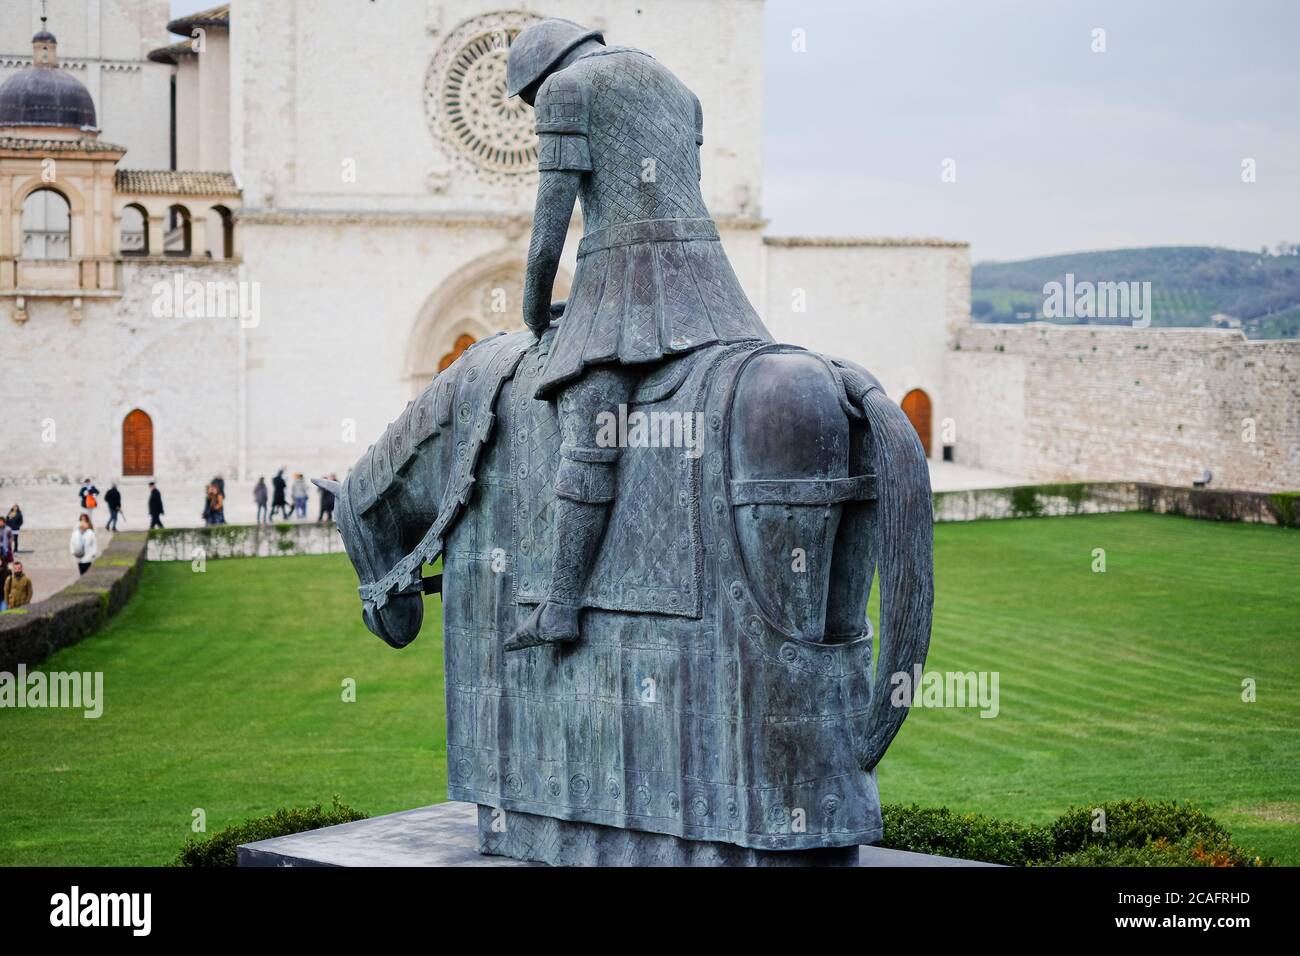 Assisi, italien - juni 30 2020: Berühmte Bronzeskulptur vor der kirche des heiligen franziskus von Assisi mit Pilgern, die Italien besuchen Stockfoto